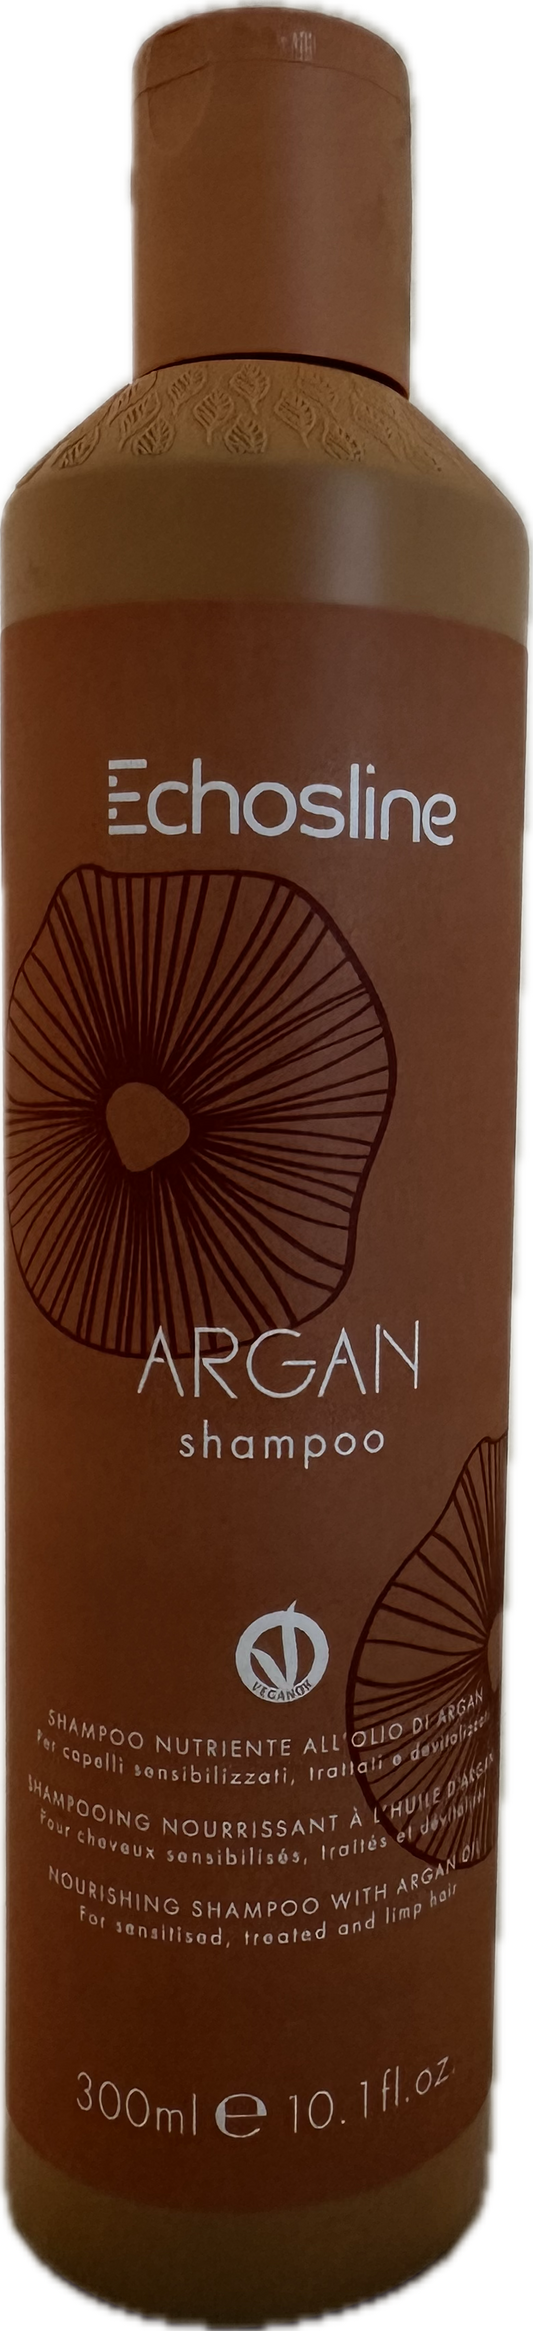 Echos Line  - Argan shampoo - Shampoo nutriente all'olio di argan 1000 ml